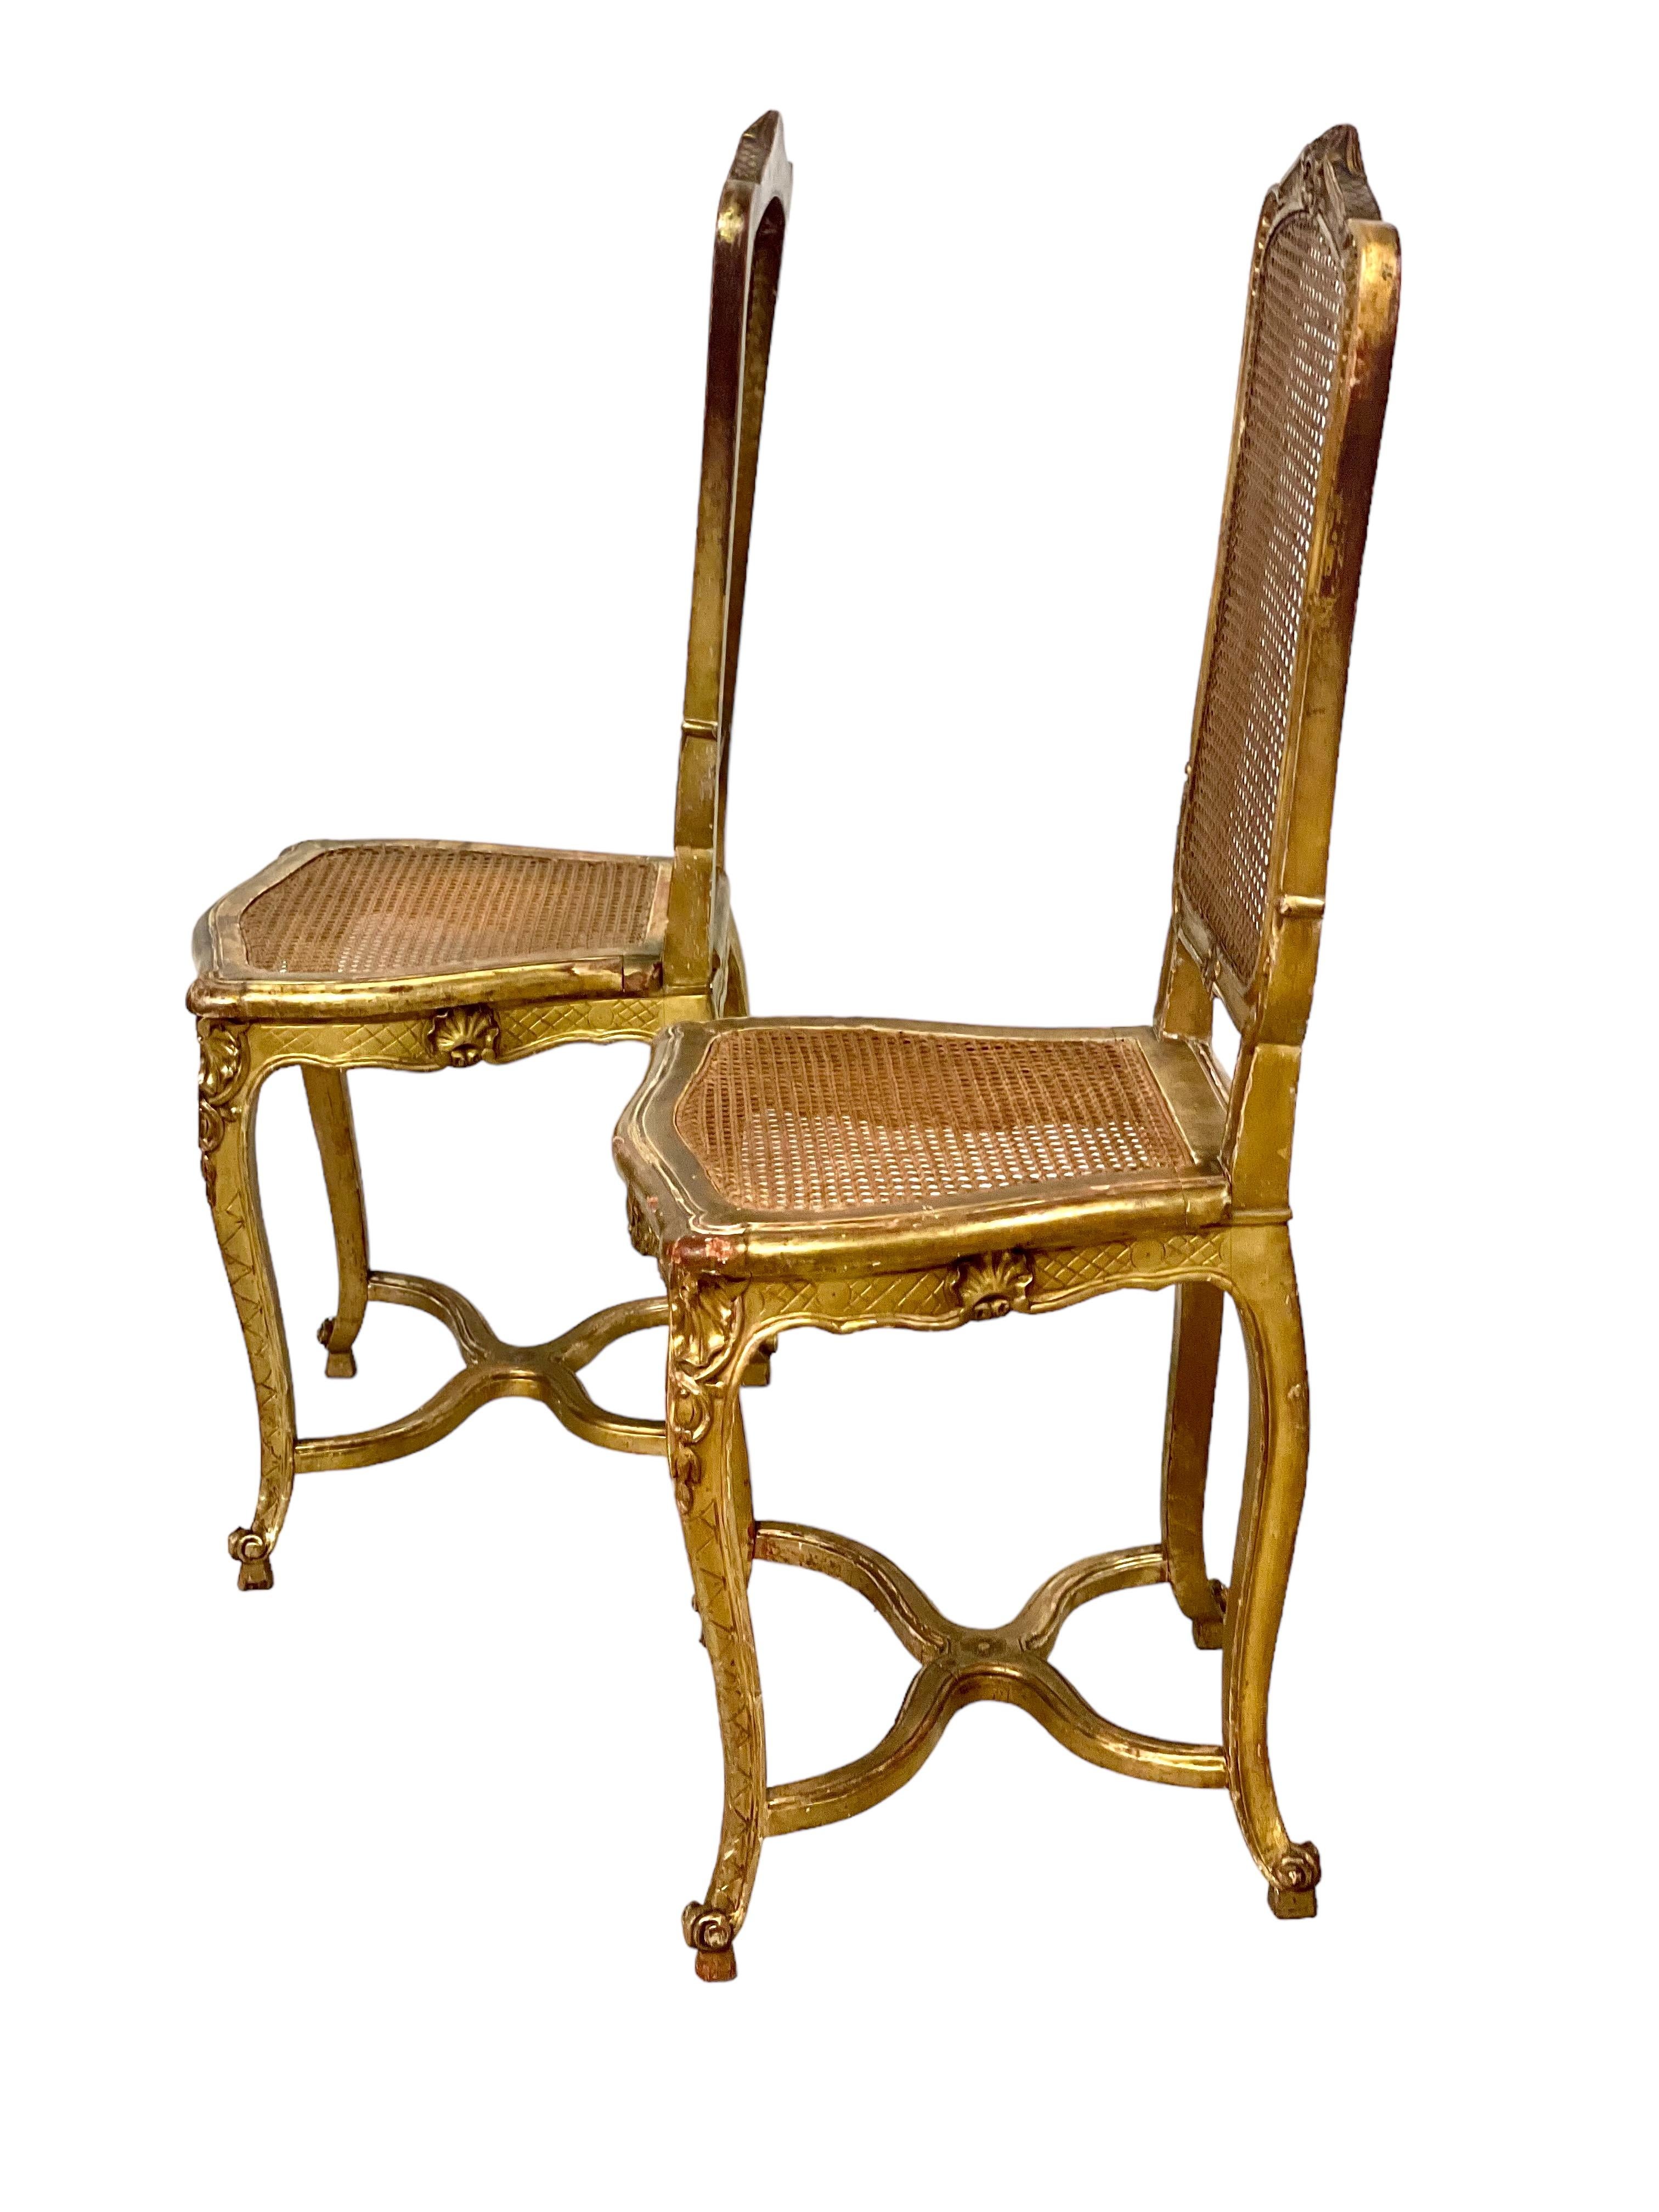 Charmante paire de chaises d'appoint en bois doré sculpté et moulé de la fin du XIXe siècle, avec assise et dossier cannelés. Ces chaises élégantes, avec leur haut dossier en forme de cartouche, reposent sur des pieds cabriole reliés par un châssis